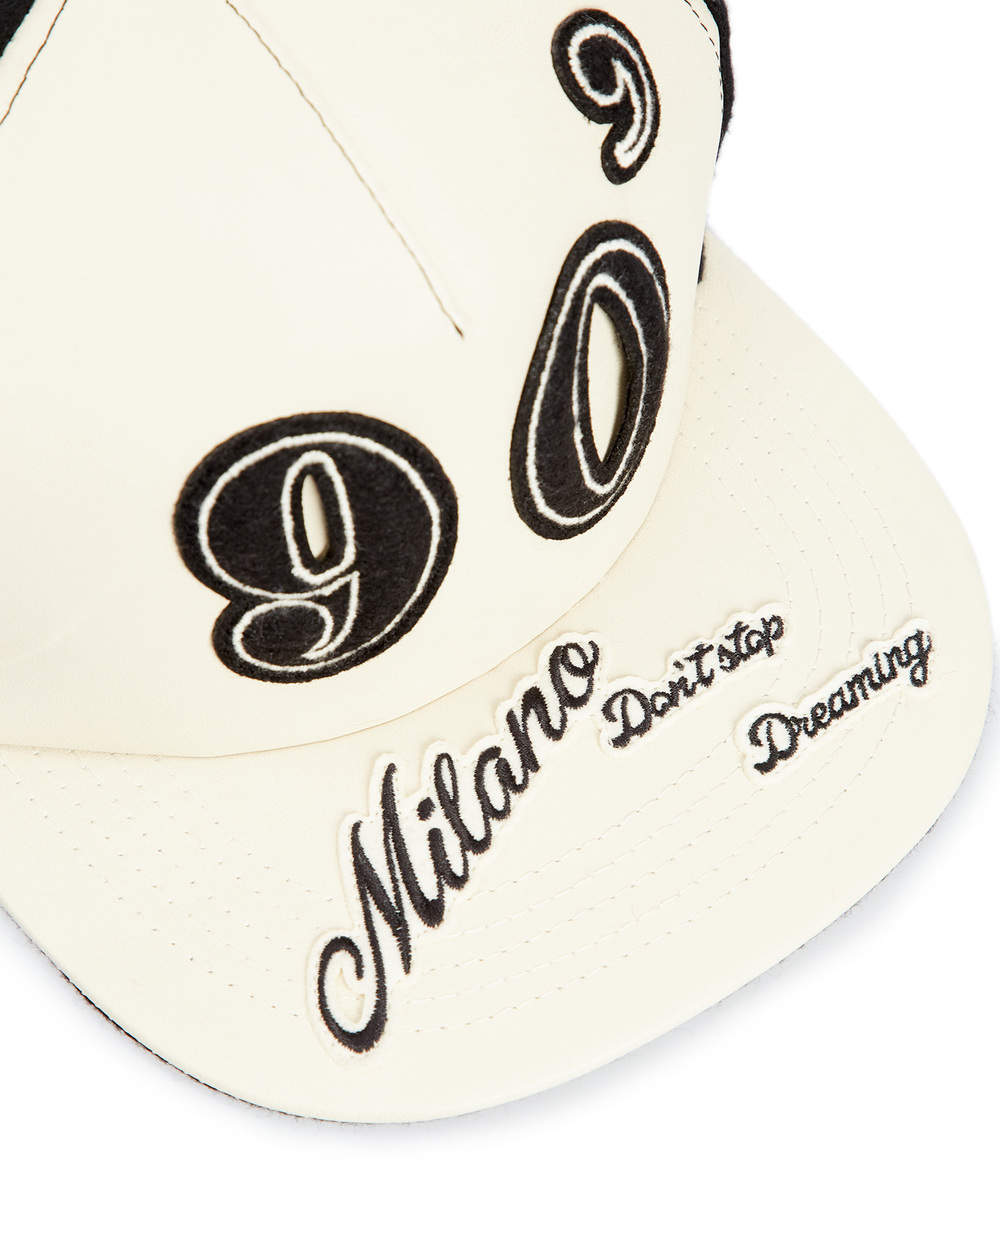 Кожаная бейсболка Dolce&Gabbana FH714Z-GEX13, белый цвет • Купить в интернет-магазине Kameron